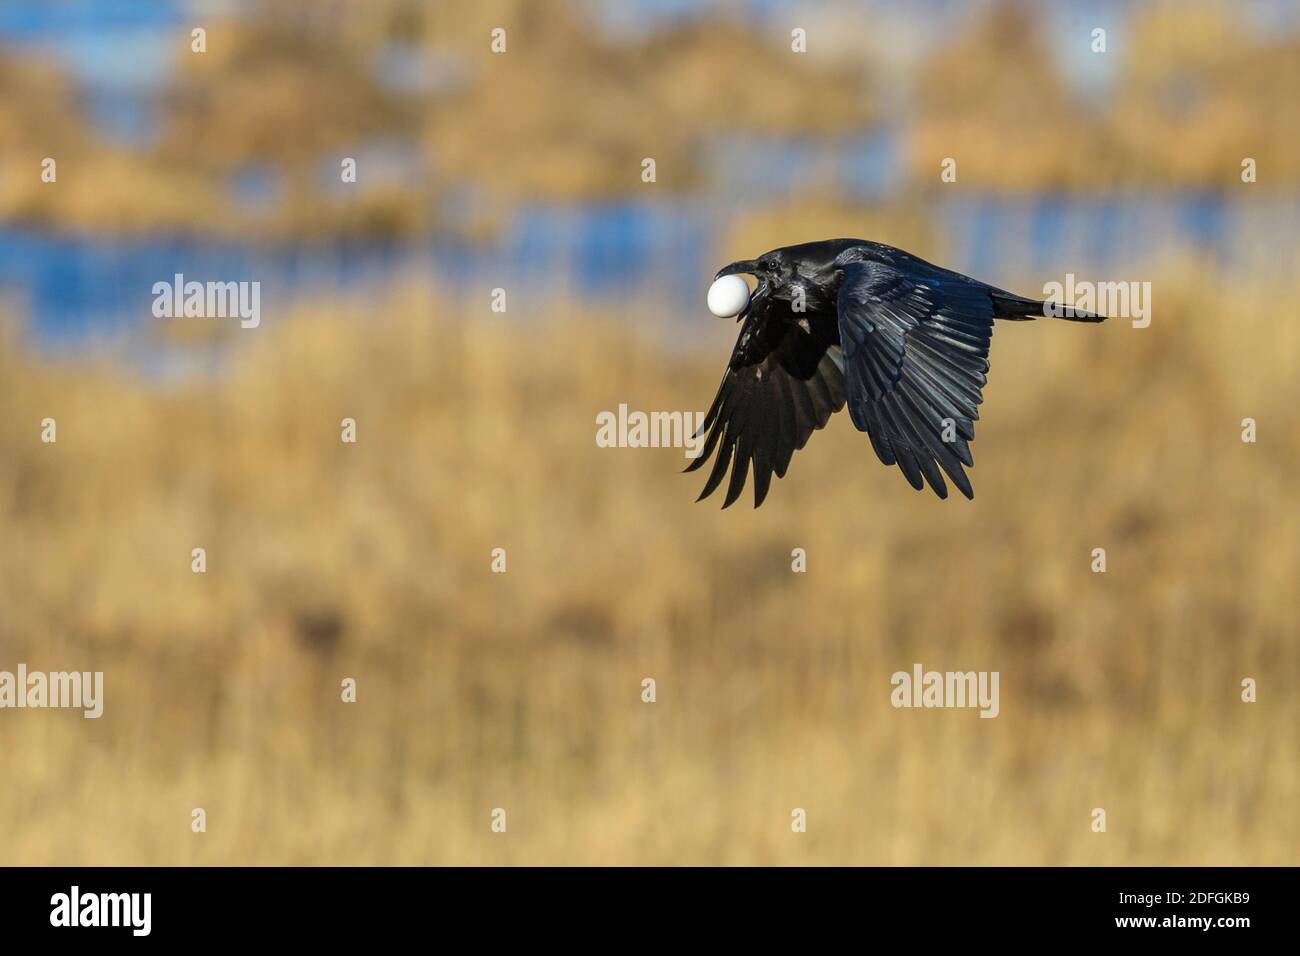 Kolkrabe mit Gänseei im Schnabel, (Corvus corax), Stock Photo